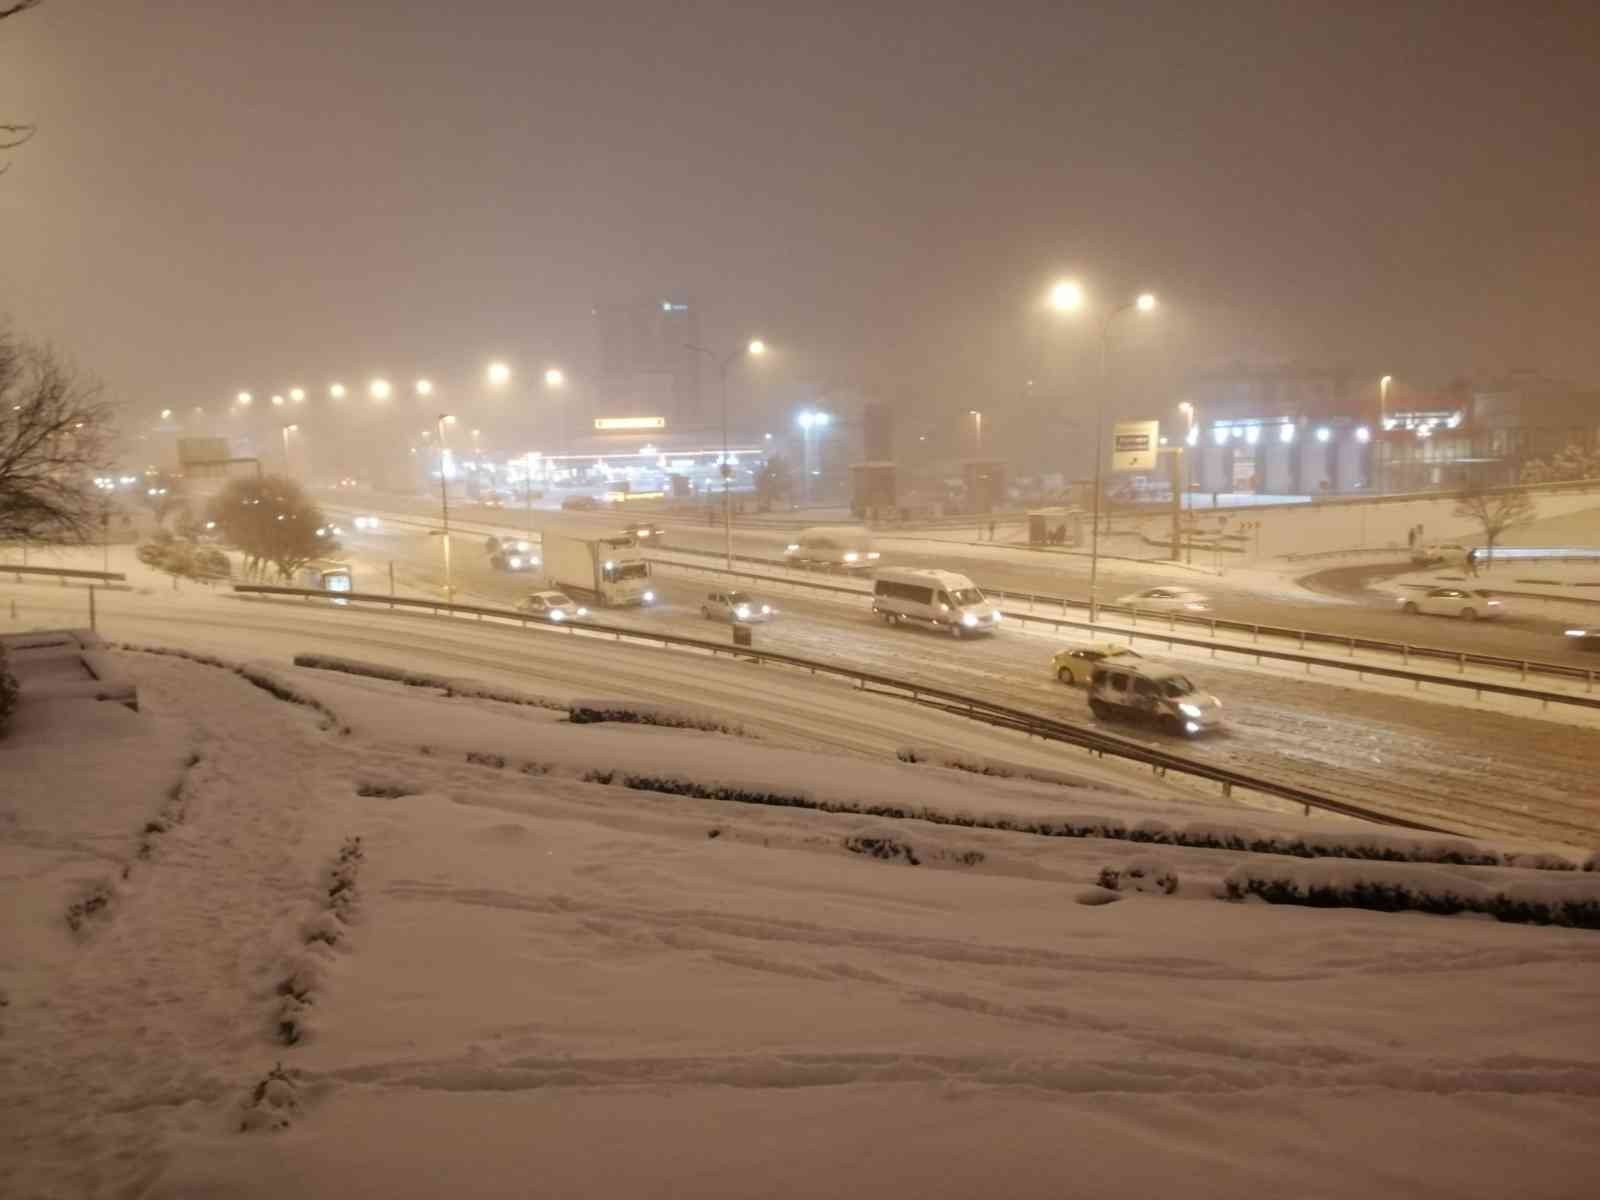 Maltepe’de etkisini arttıran kar yağışı sonrası E-5 buz tuttu. Sürücüler yolda patinaj yaparak güçlükle ilerledi. İstanbul’da kar yağışı akşam ...